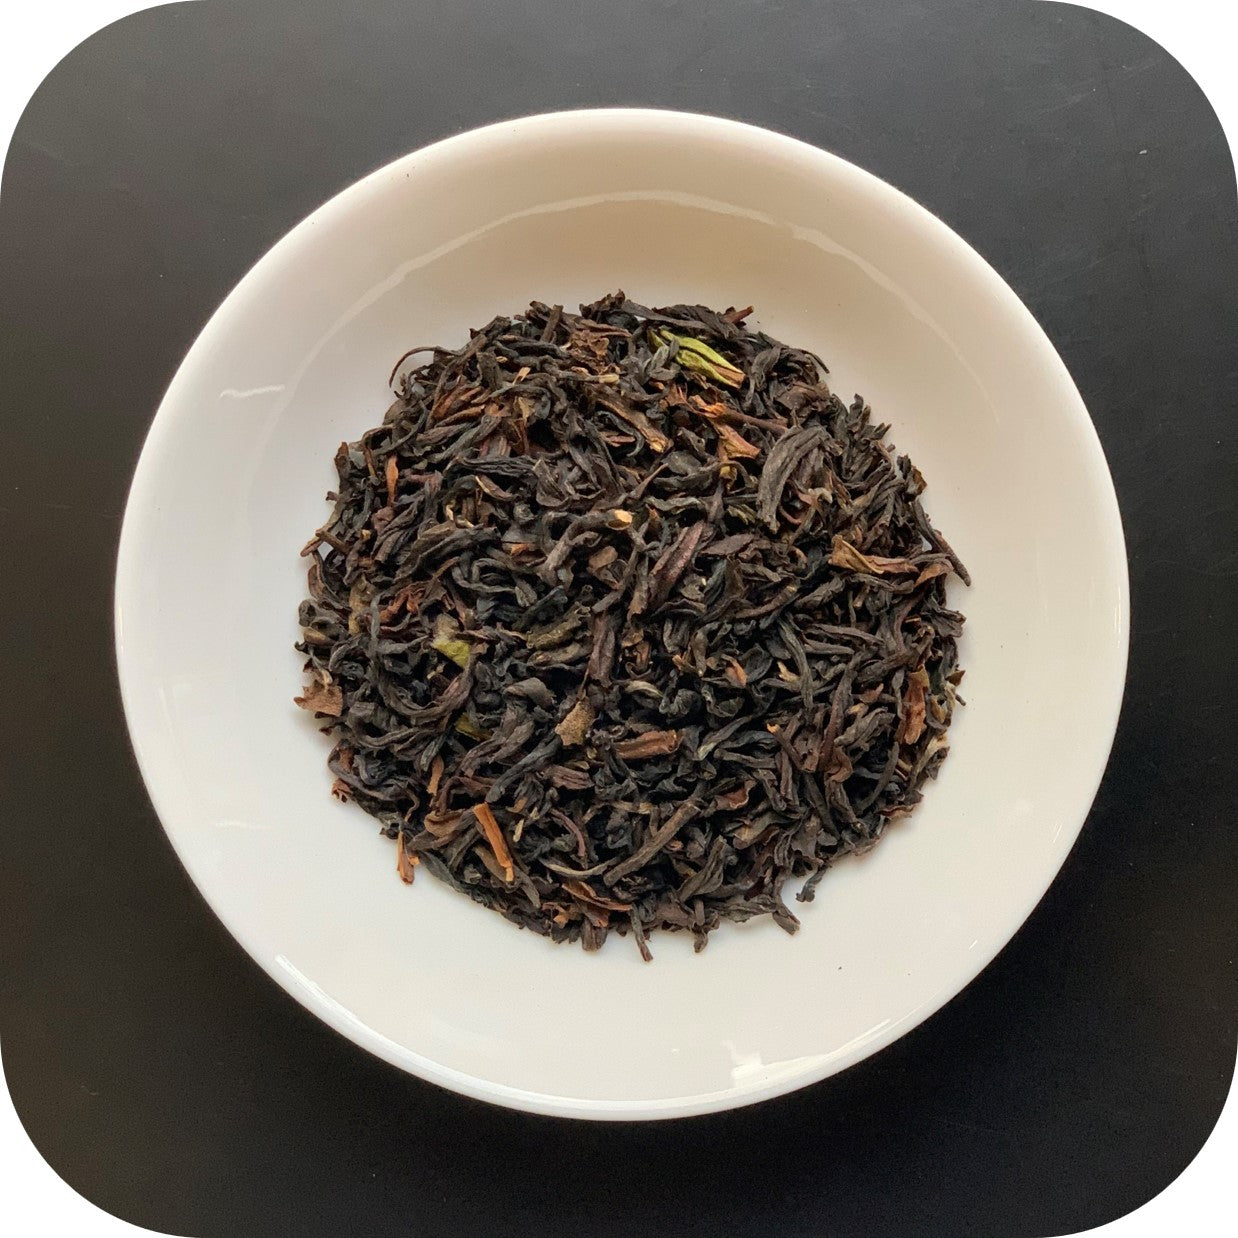 Darjeeling - Margaret's Hope - Black Tea